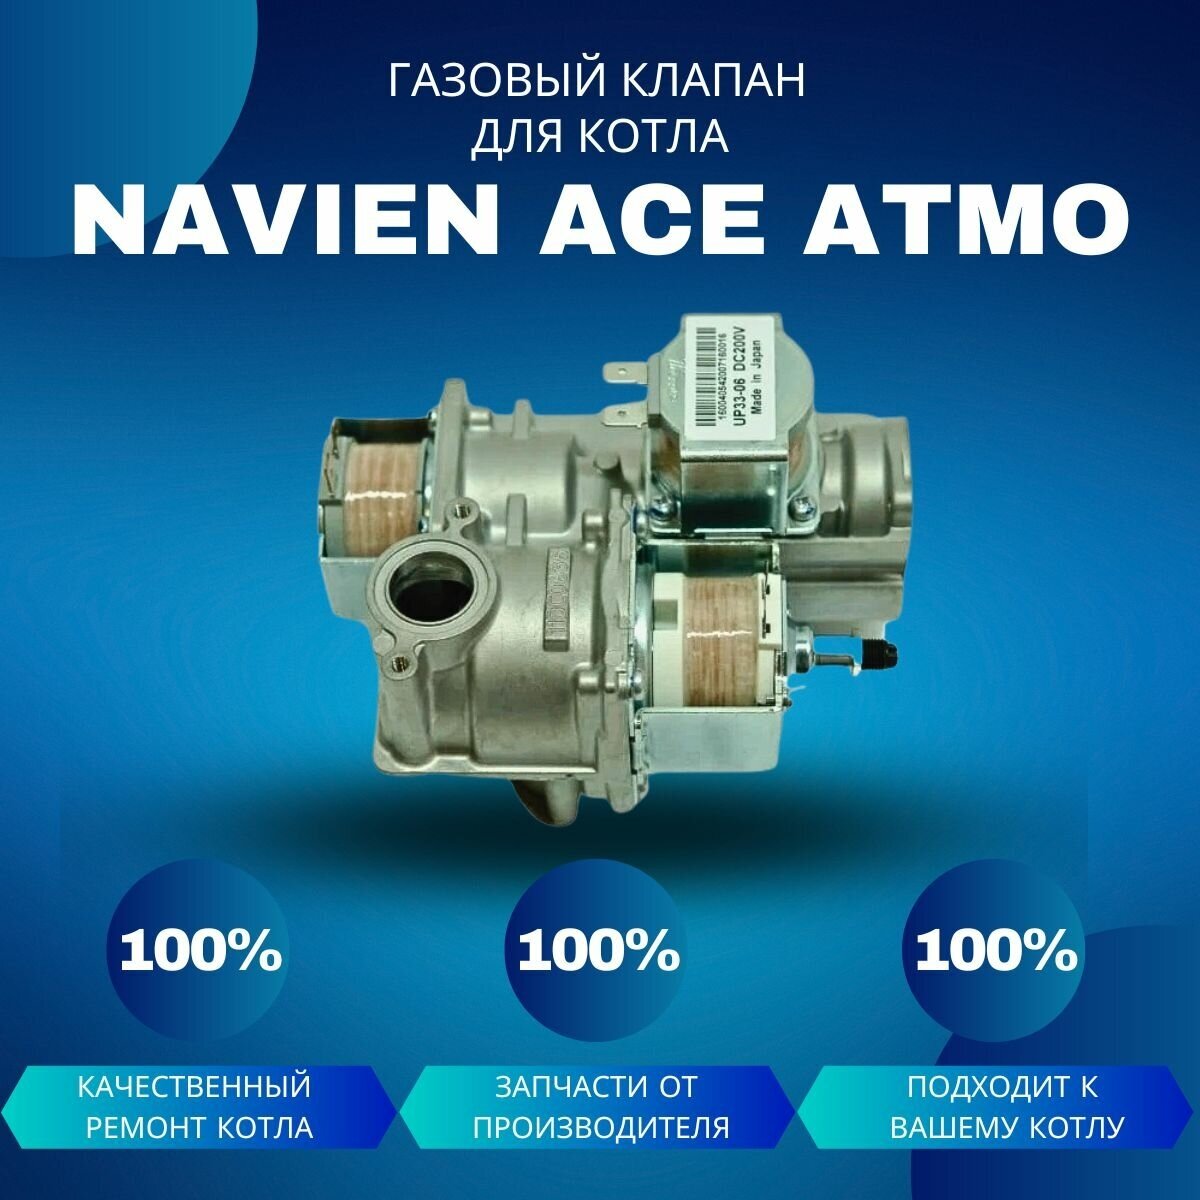 Газовый клапан для котла Navien Ace Atmo